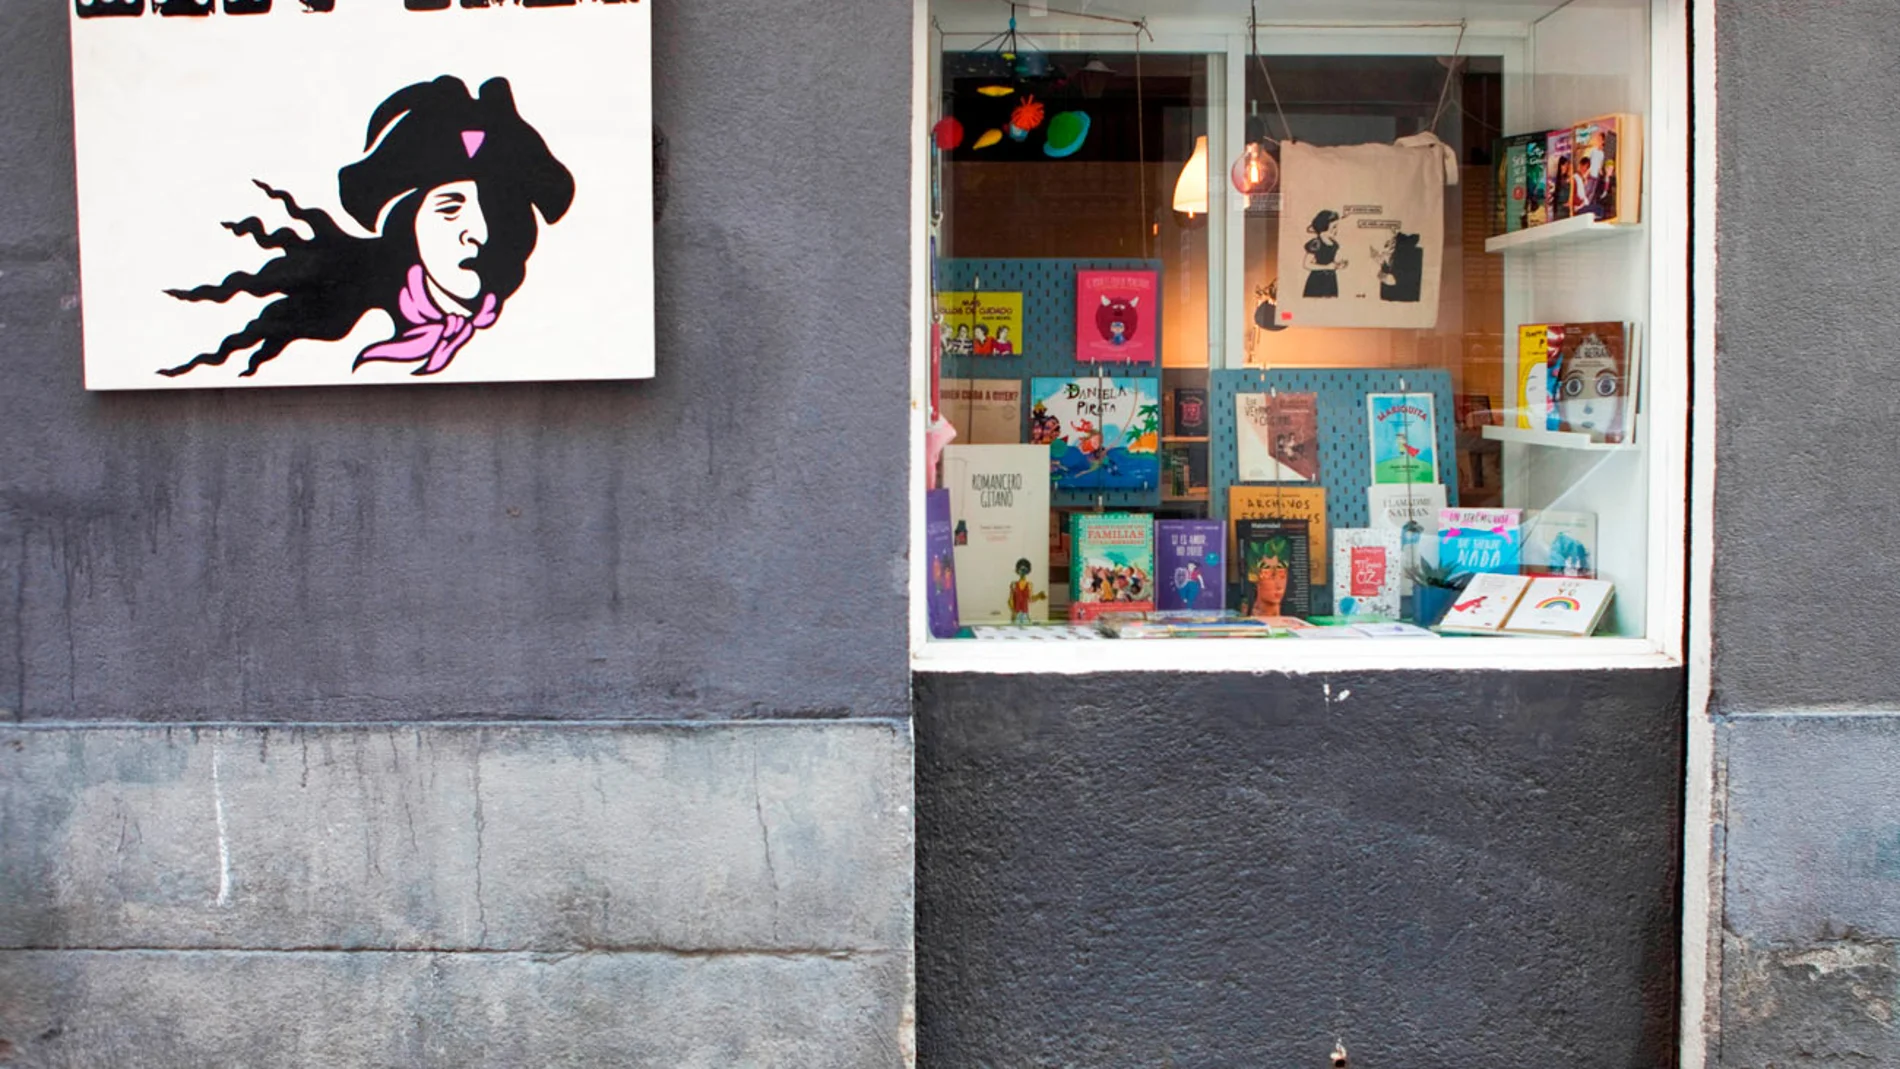 Mary Read, librería LGTBQ+ transfeminista, abrió en 2020 en la calle del Marqués de Toca 3.